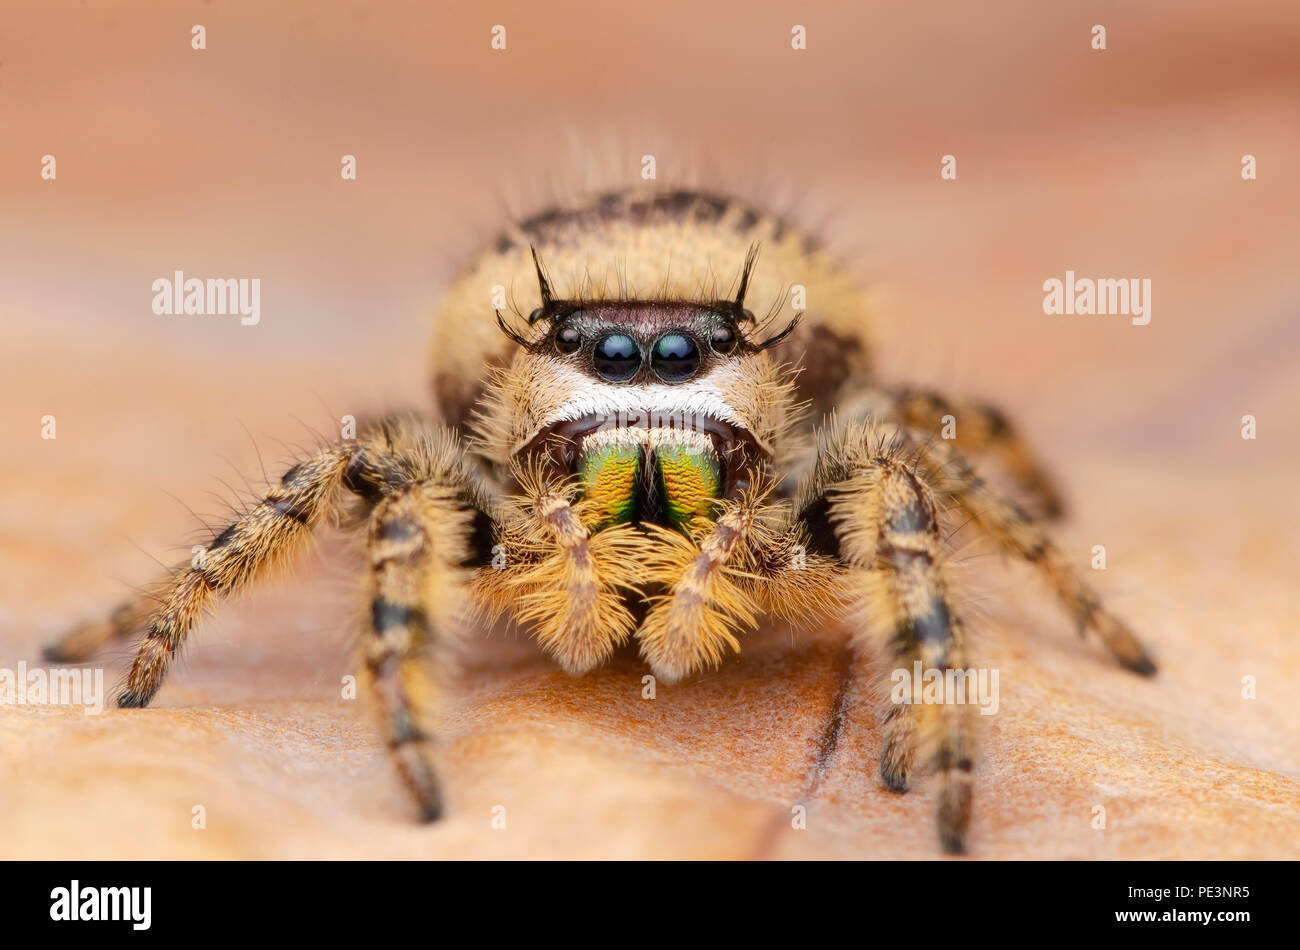 jumping spider, Phidippus otiosus female. Stock Photo